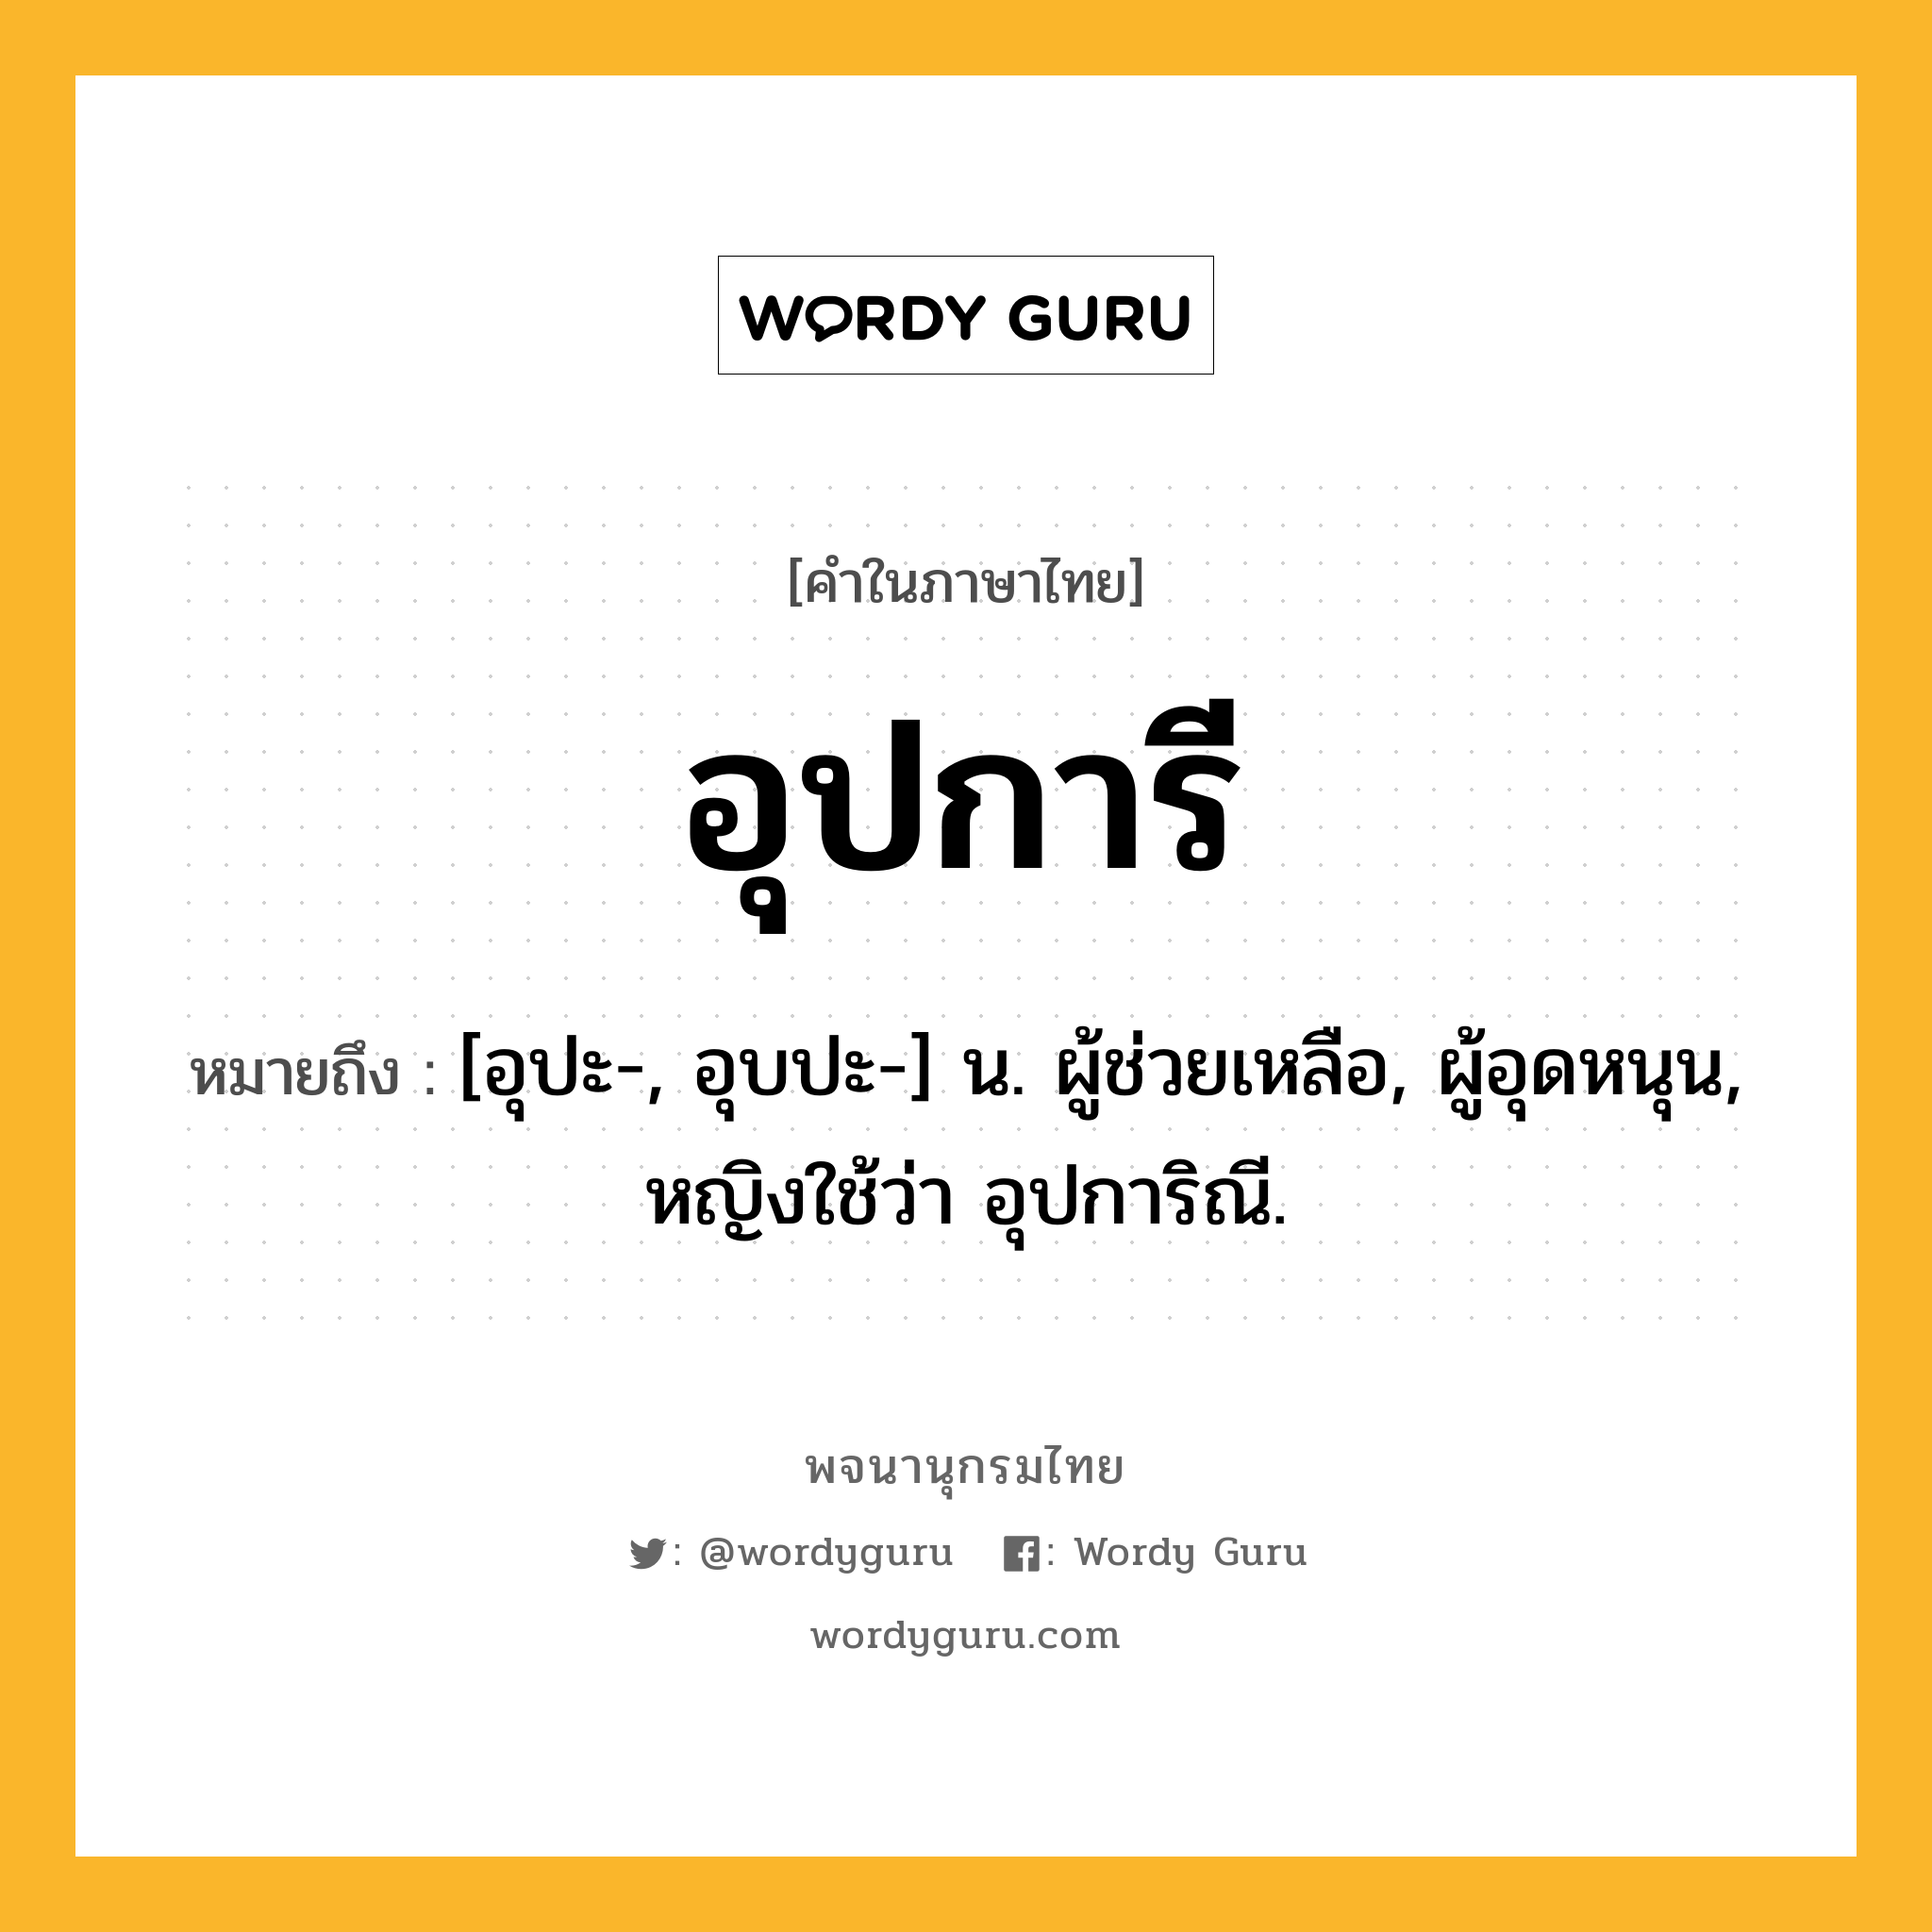 อุปการี หมายถึงอะไร?, คำในภาษาไทย อุปการี หมายถึง [อุปะ-, อุบปะ-] น. ผู้ช่วยเหลือ, ผู้อุดหนุน, หญิงใช้ว่า อุปการิณี.